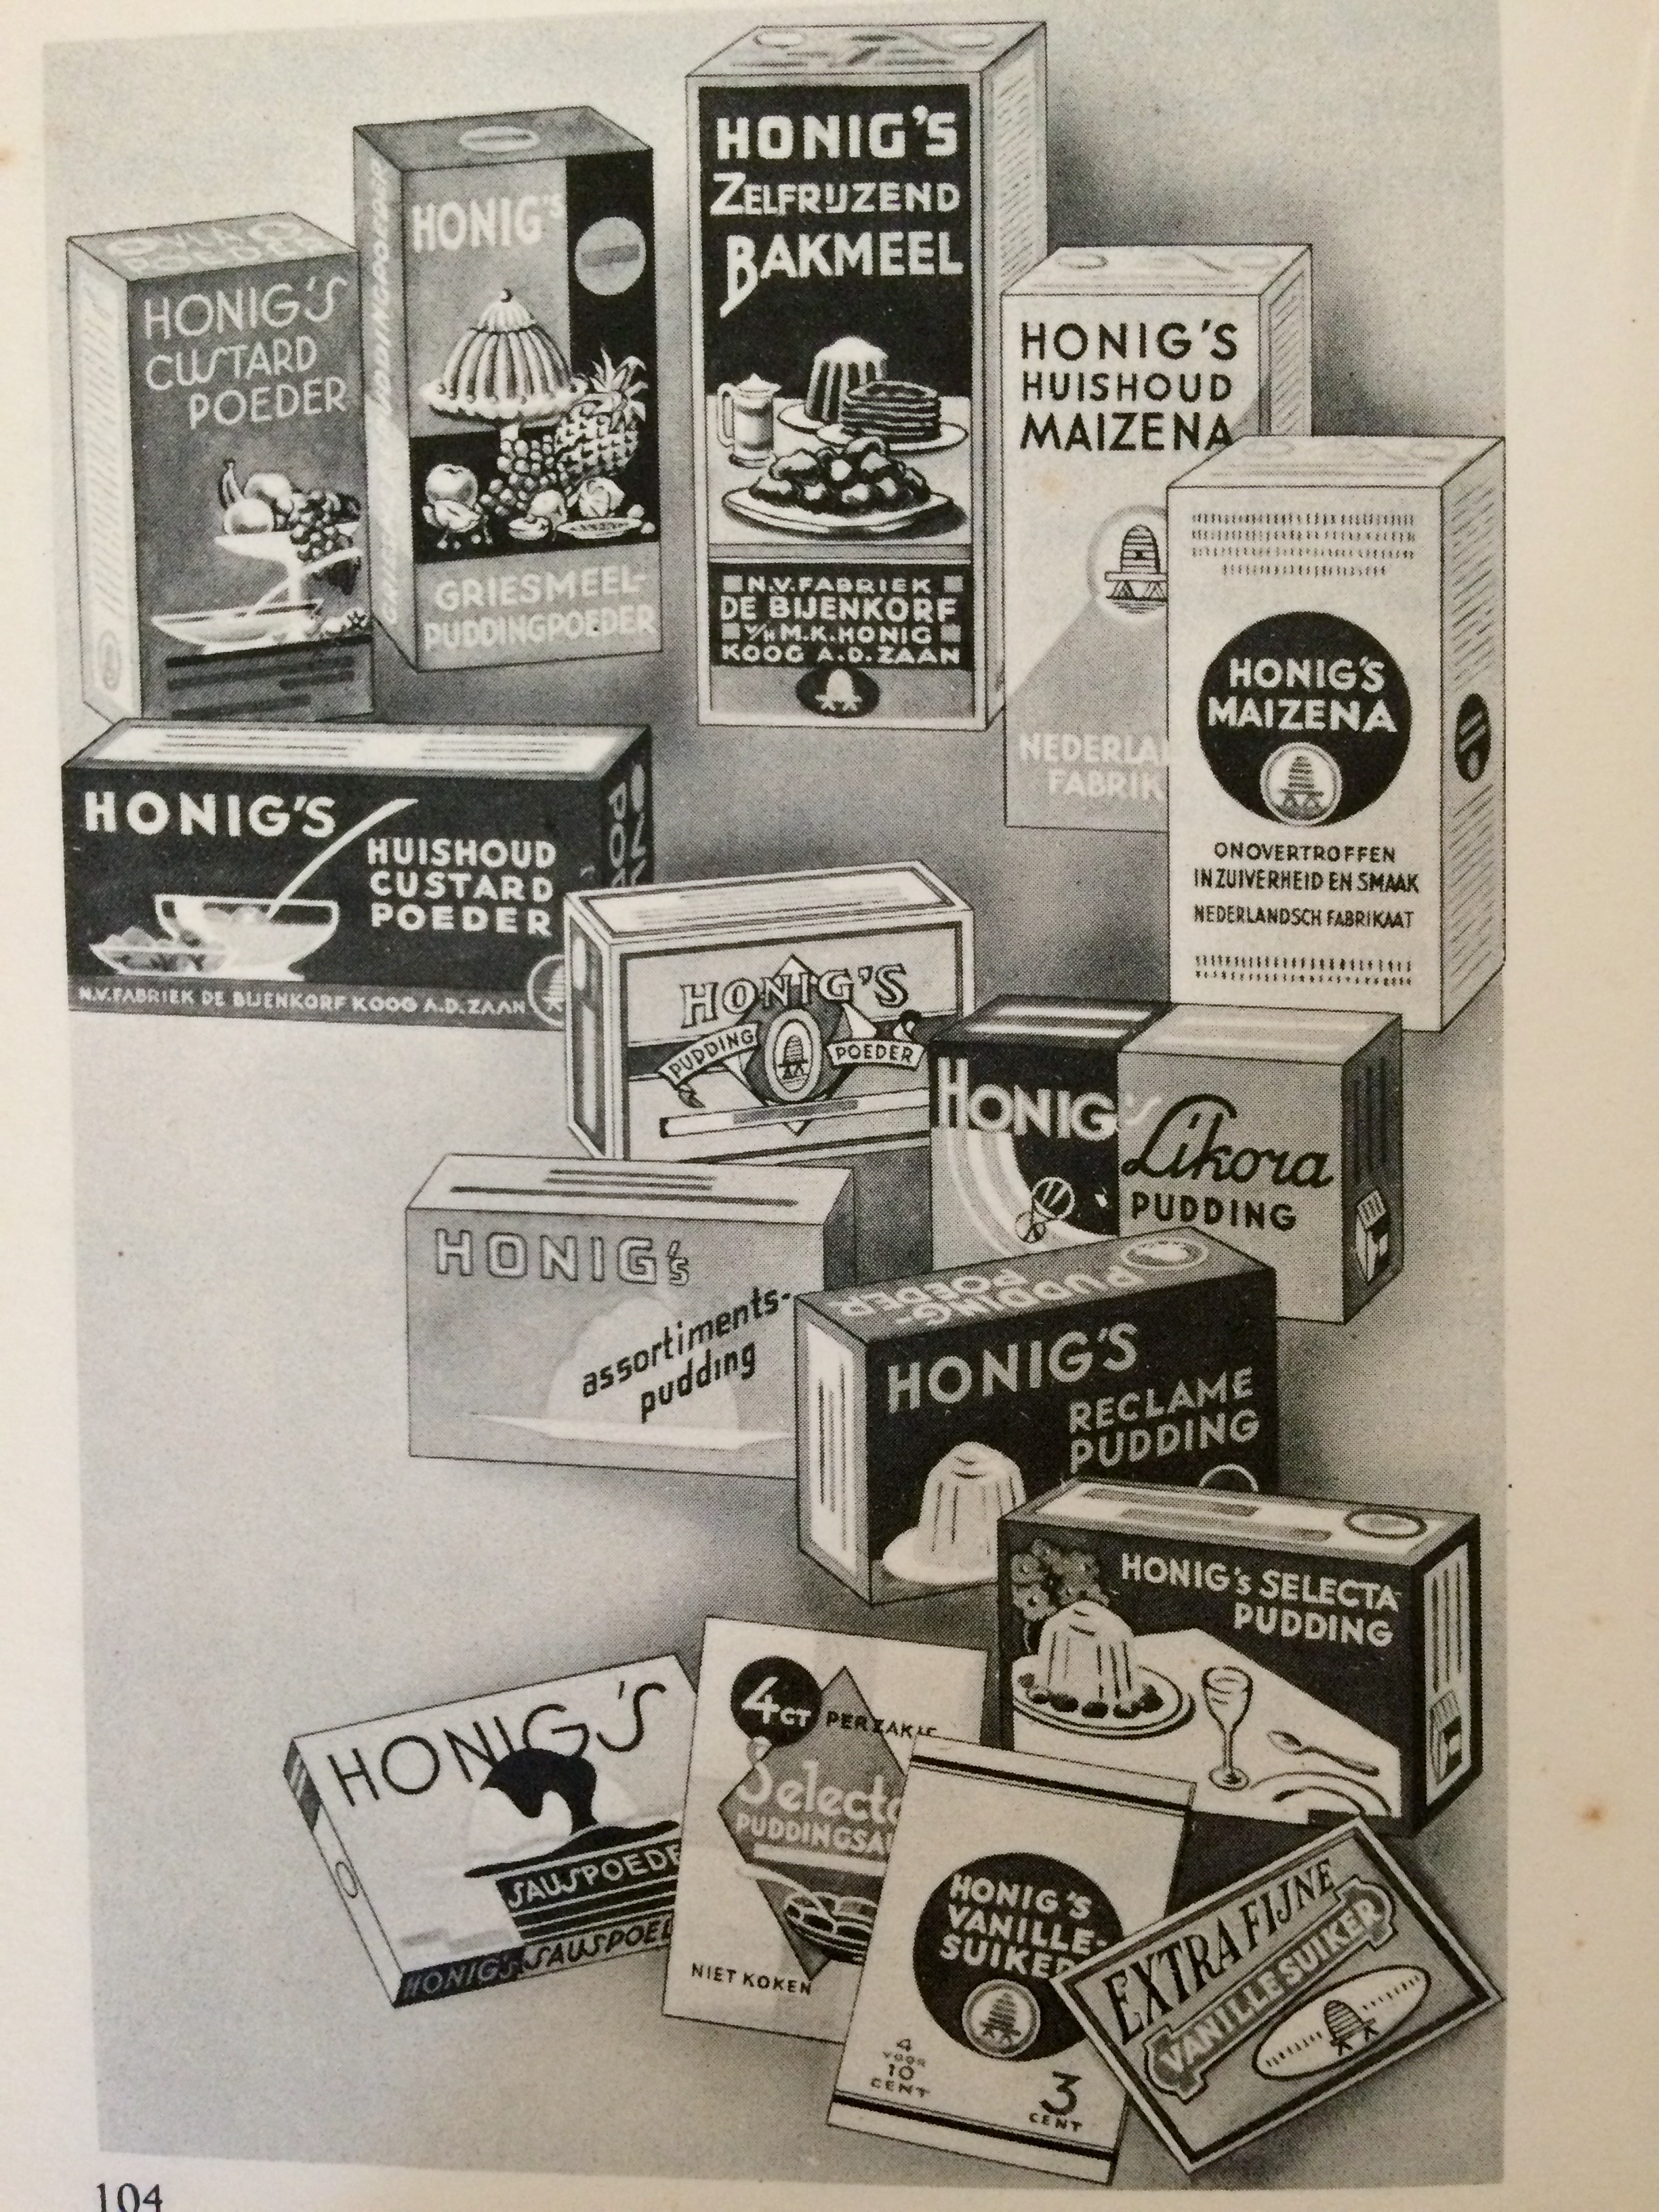 geschiedenis van honig